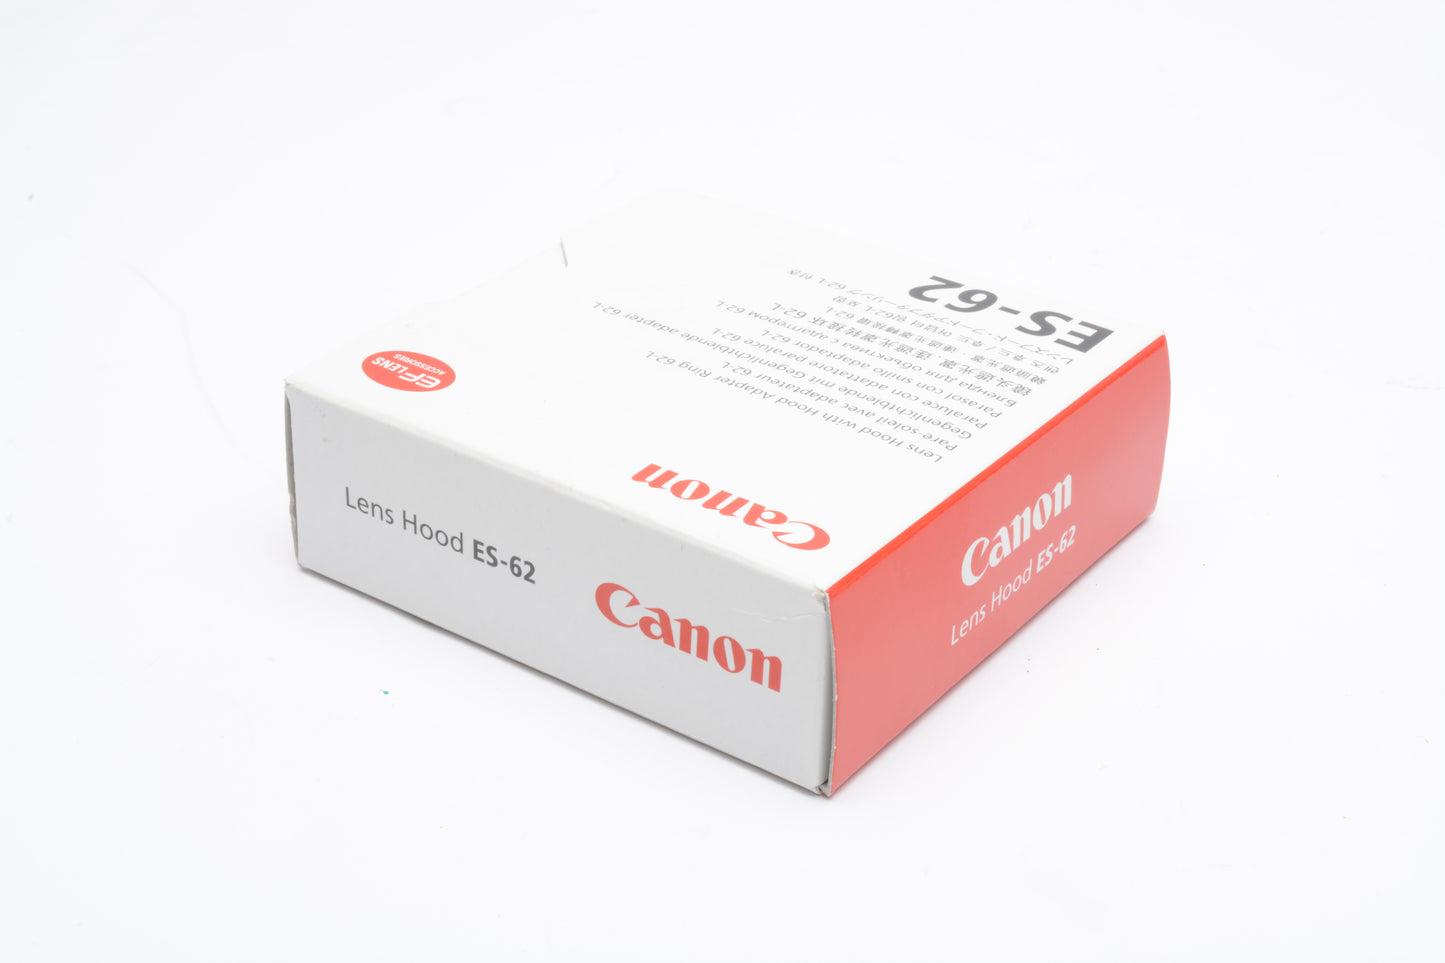 Canon Genuine ES-62 plastic lens hood in box